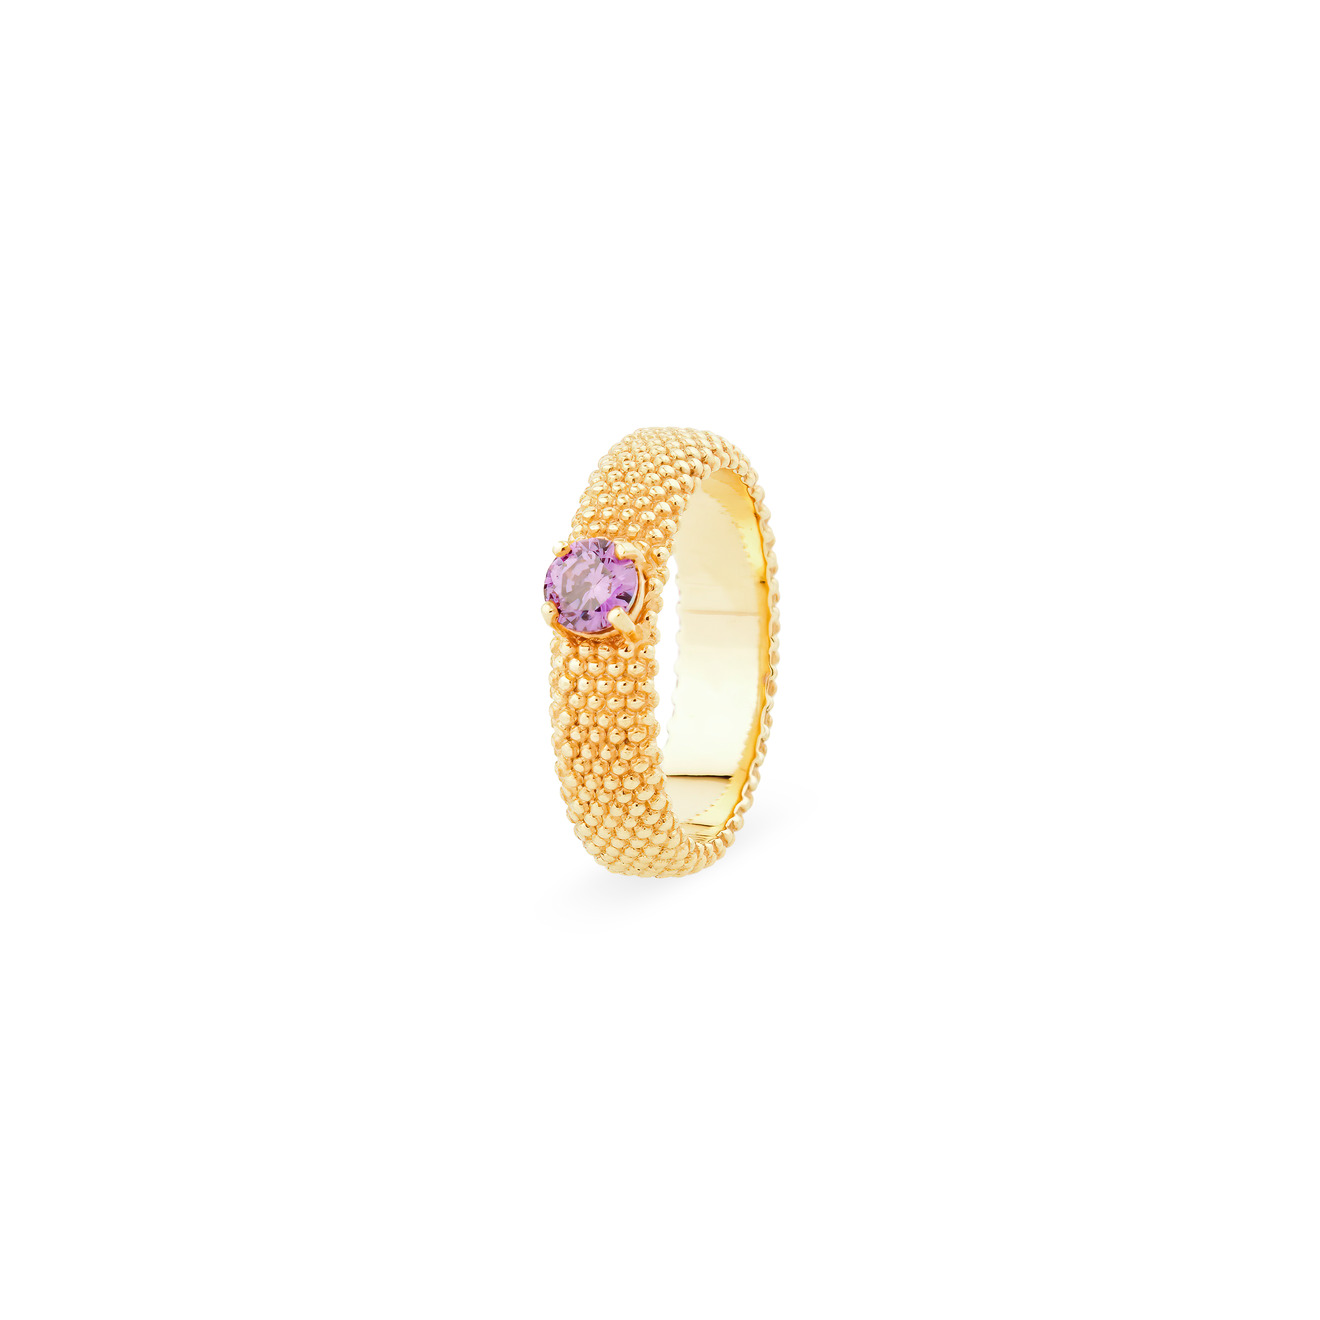 KRASHE jewellery Позолоченное кольцо «Золотые мурашки» с фиолетовым фианитом позолоченное кольцо с мистик фианитом